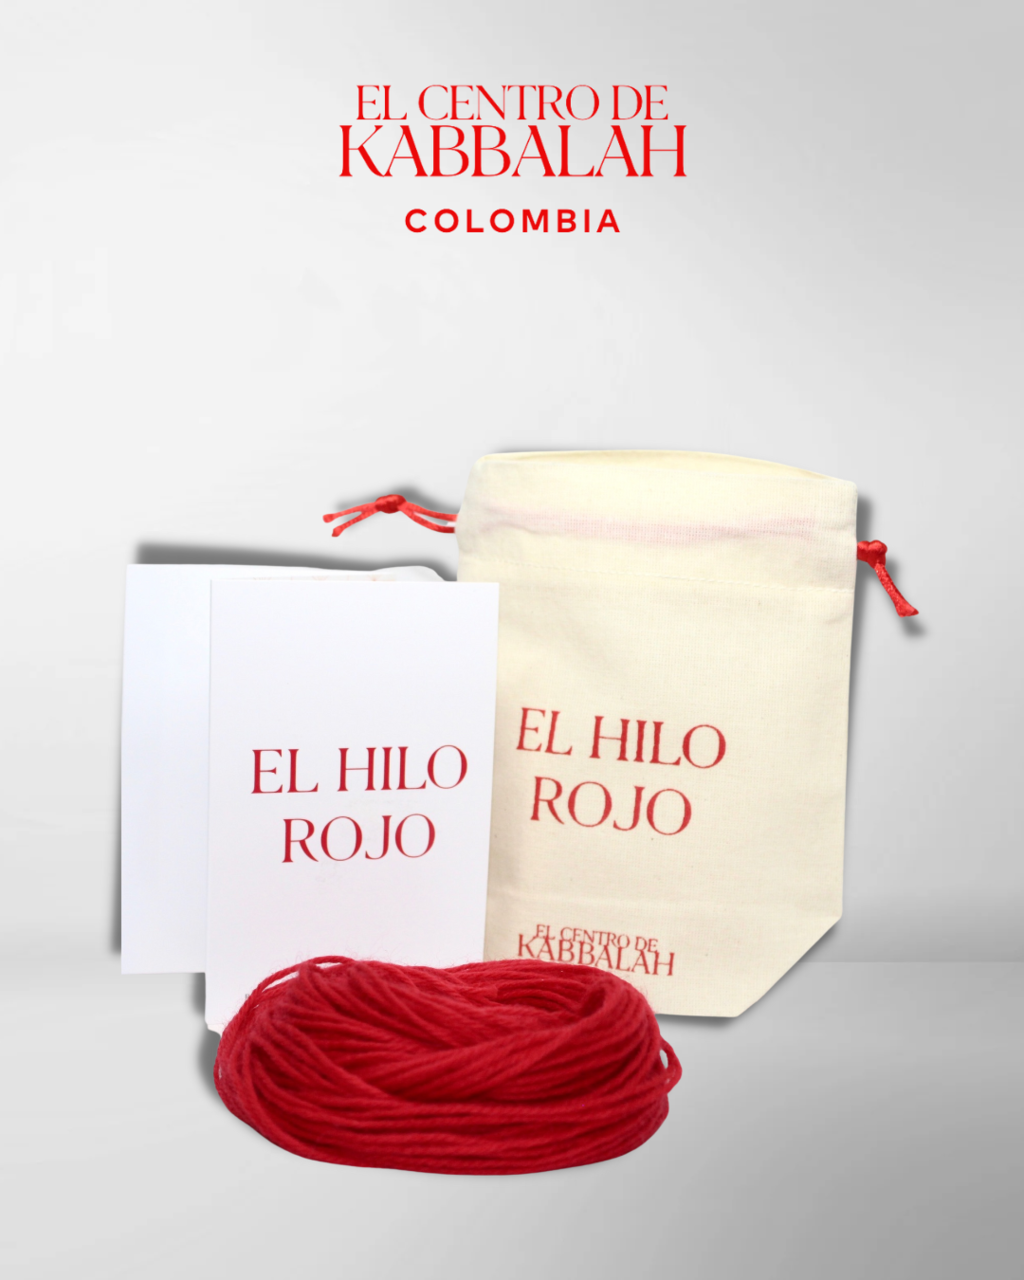 Lubricar Creo que estoy enfermo limpiador Hilo Rojo - Comprar en Centro de Kabbalah Colombia